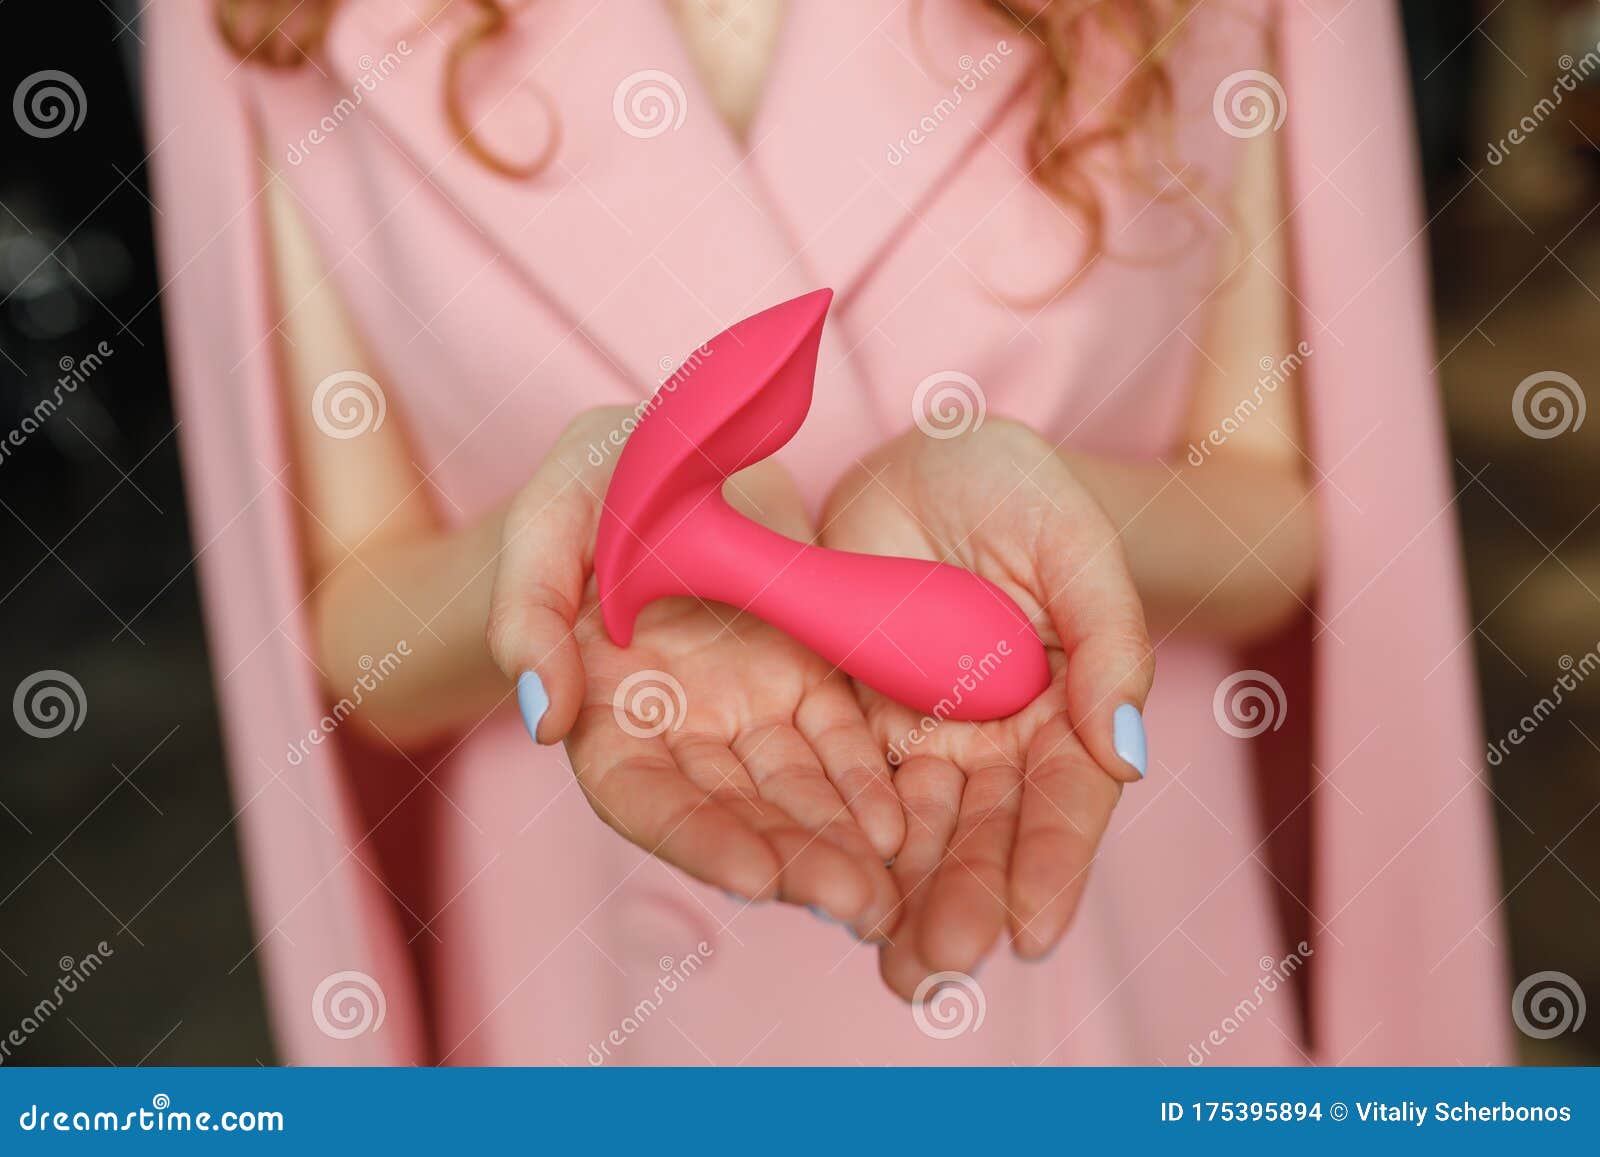 Vrouw Handig Houdt Seksspeelgoed Vast Erotisch Plezier Speeltje Op Vrouwelijke Hand Sex-gadget En Masturbatie-inrichting Voor Vol Stock Foto afbeelding